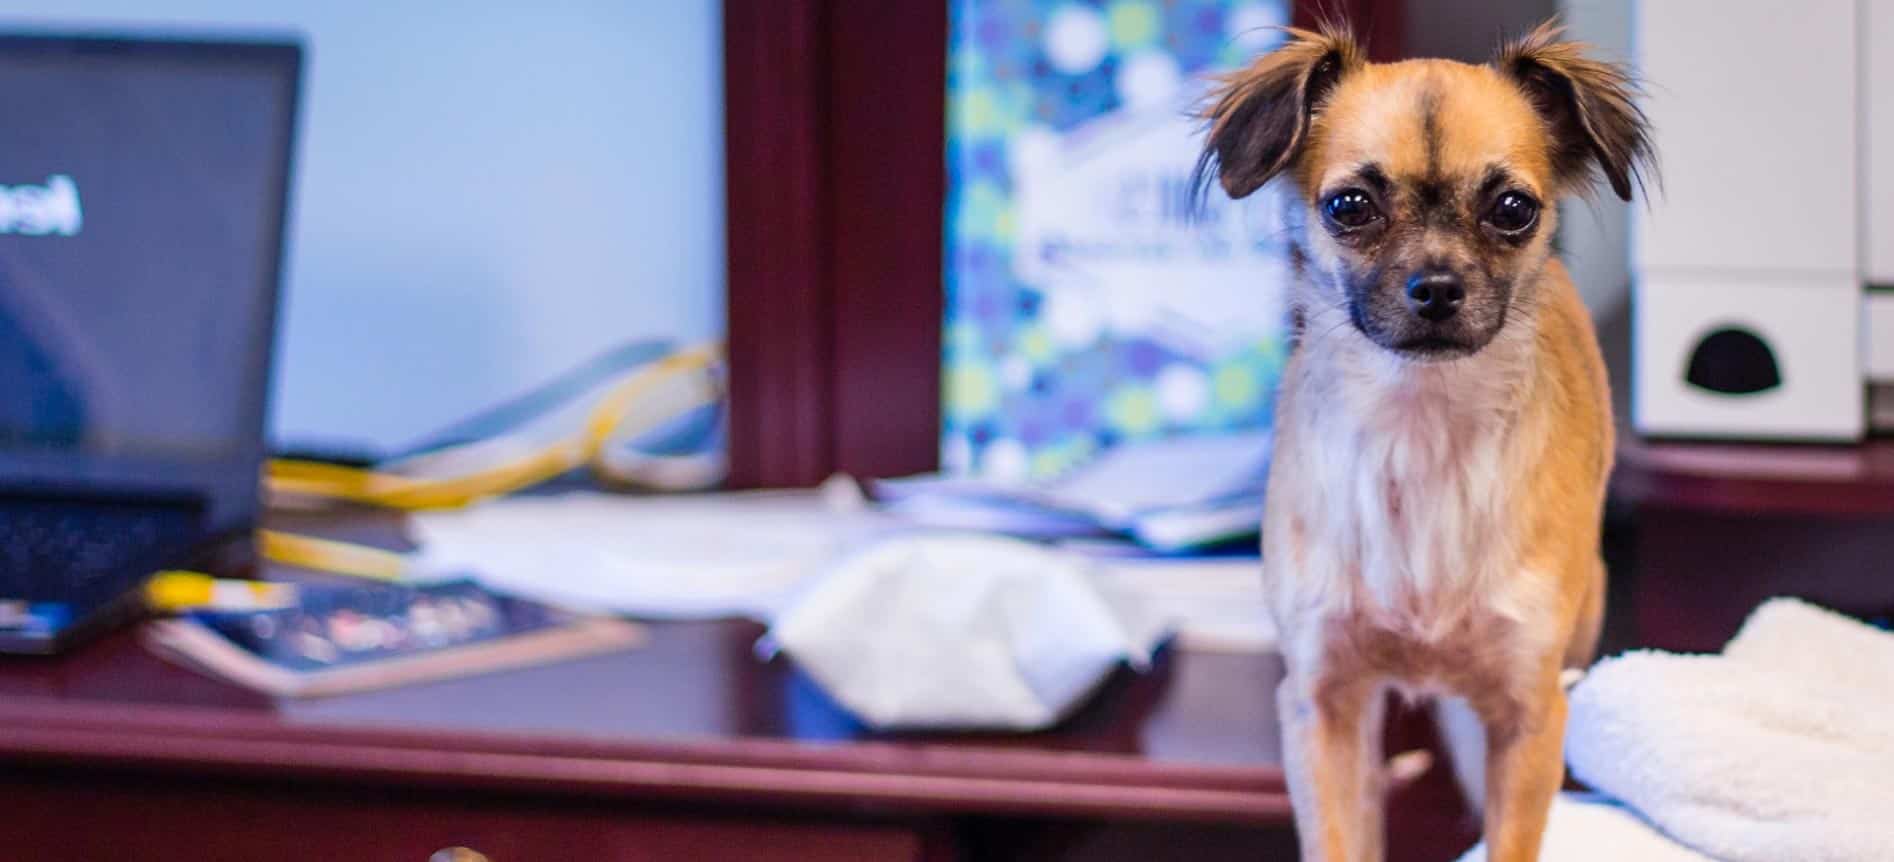 Hund im Büro - die Gefahren